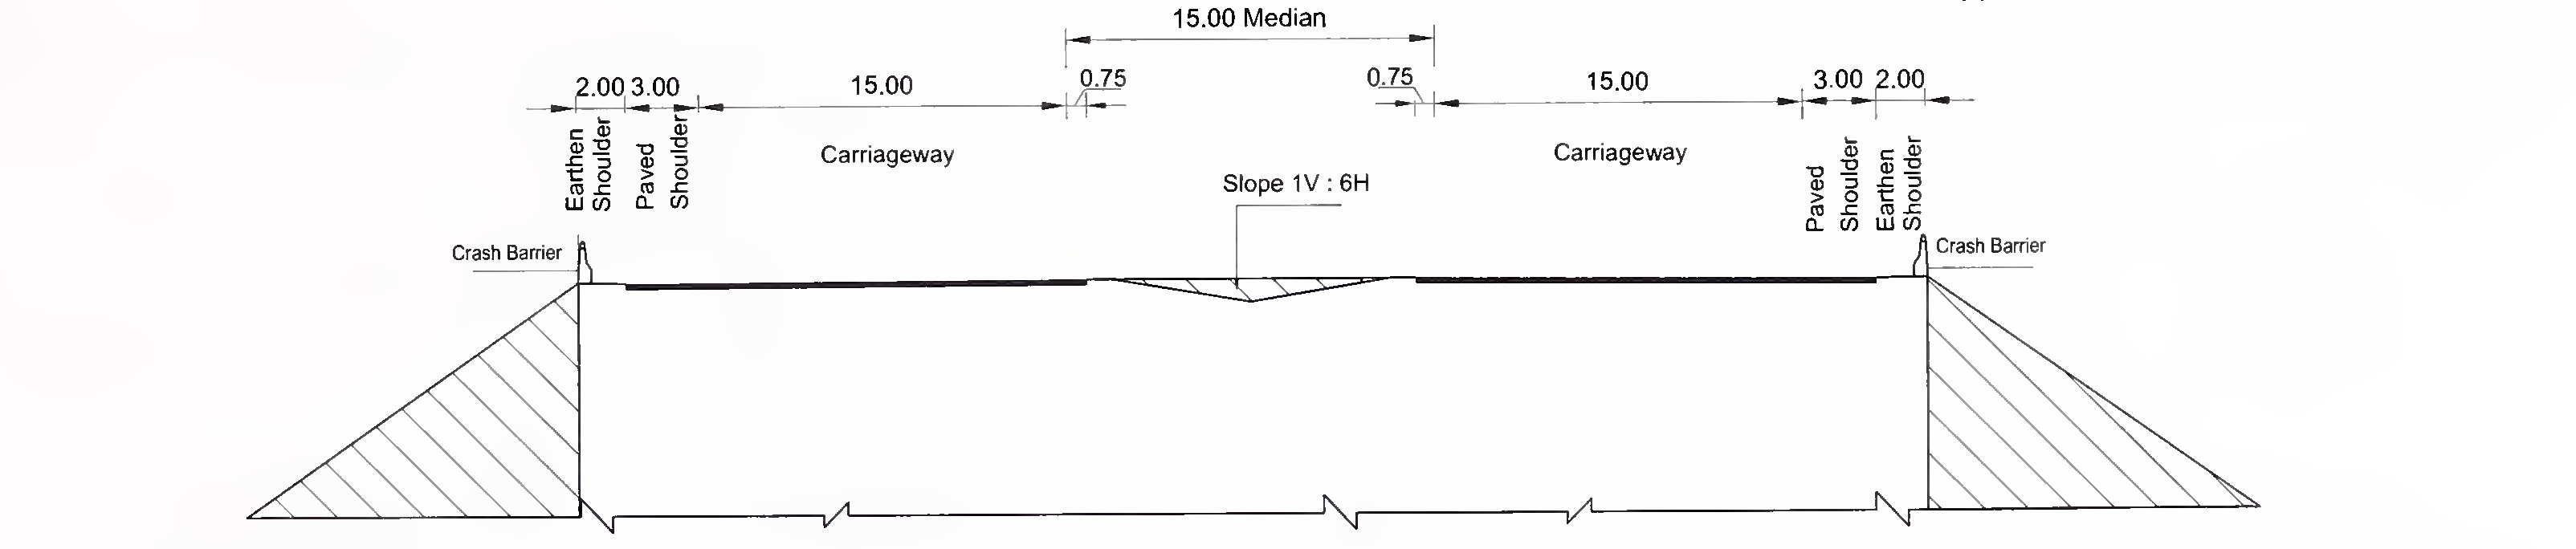 ਚਿੱਤਰ 6.3 (ਸੀ) 8-ਲੇਨ (2 × 4) ਐਕਸਪ੍ਰੈਸ ਵੇਅ ਲਈ ਸਲੈਬ ਅਤੇ ਬਾਕਸ ਟਾਈਪ ਕੁਲਵਰਟ ਦਾ ਖਾਸ ਕਰਾਸ-ਸੈਕਸ਼ਨ